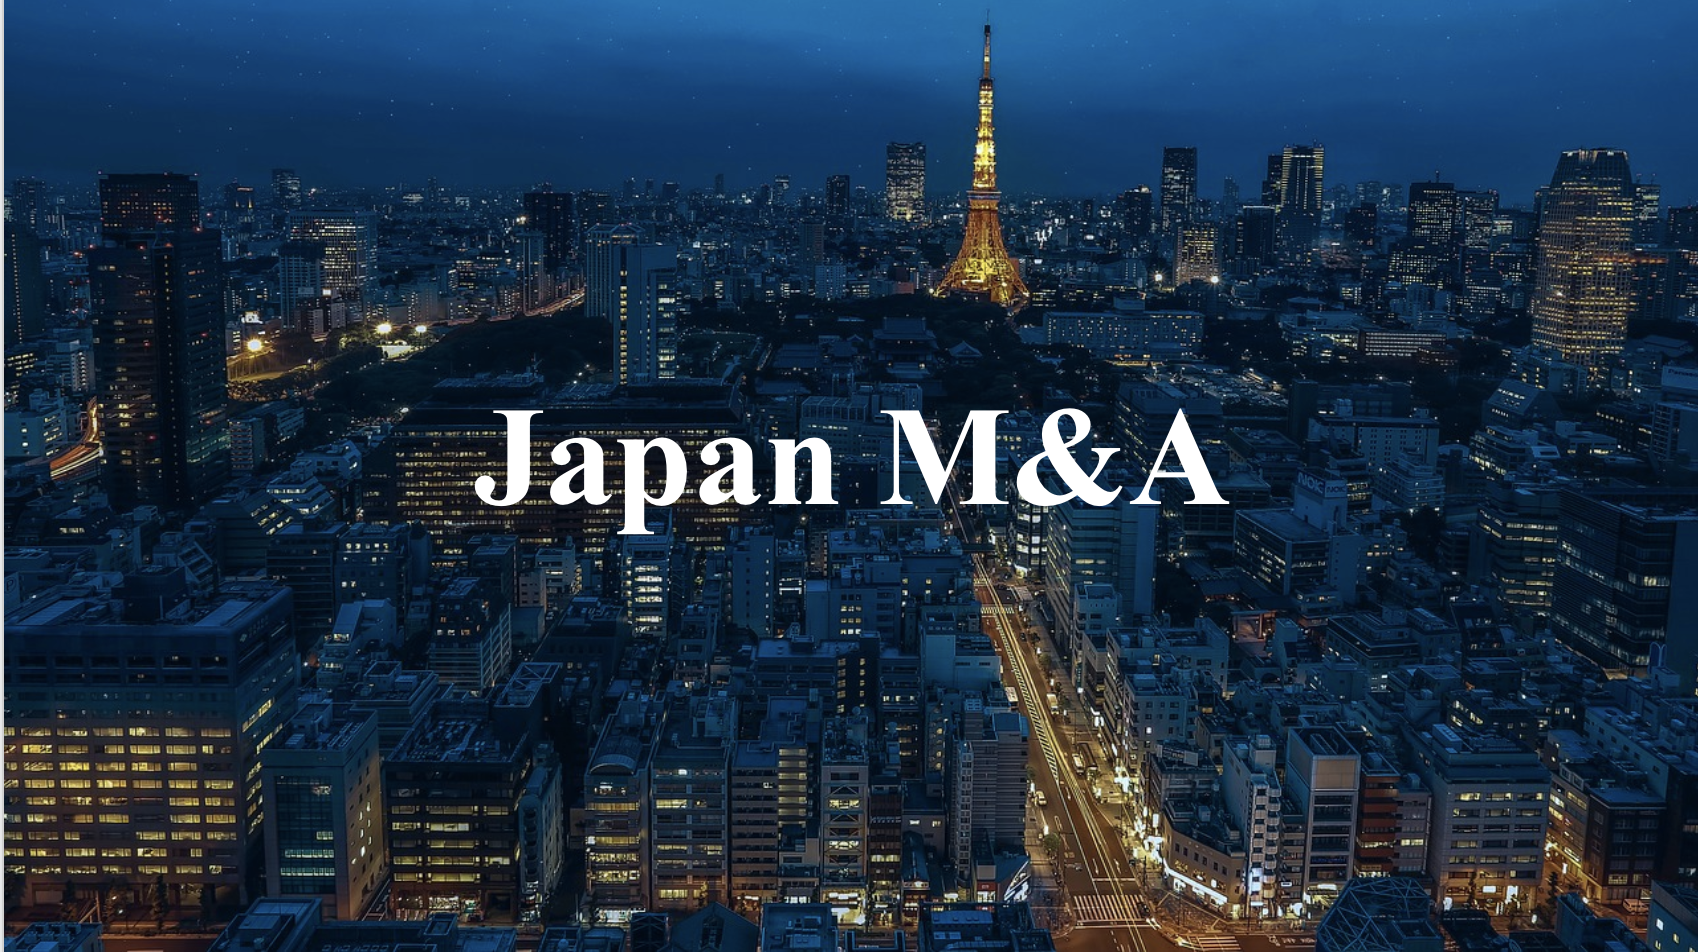 Japan M&A